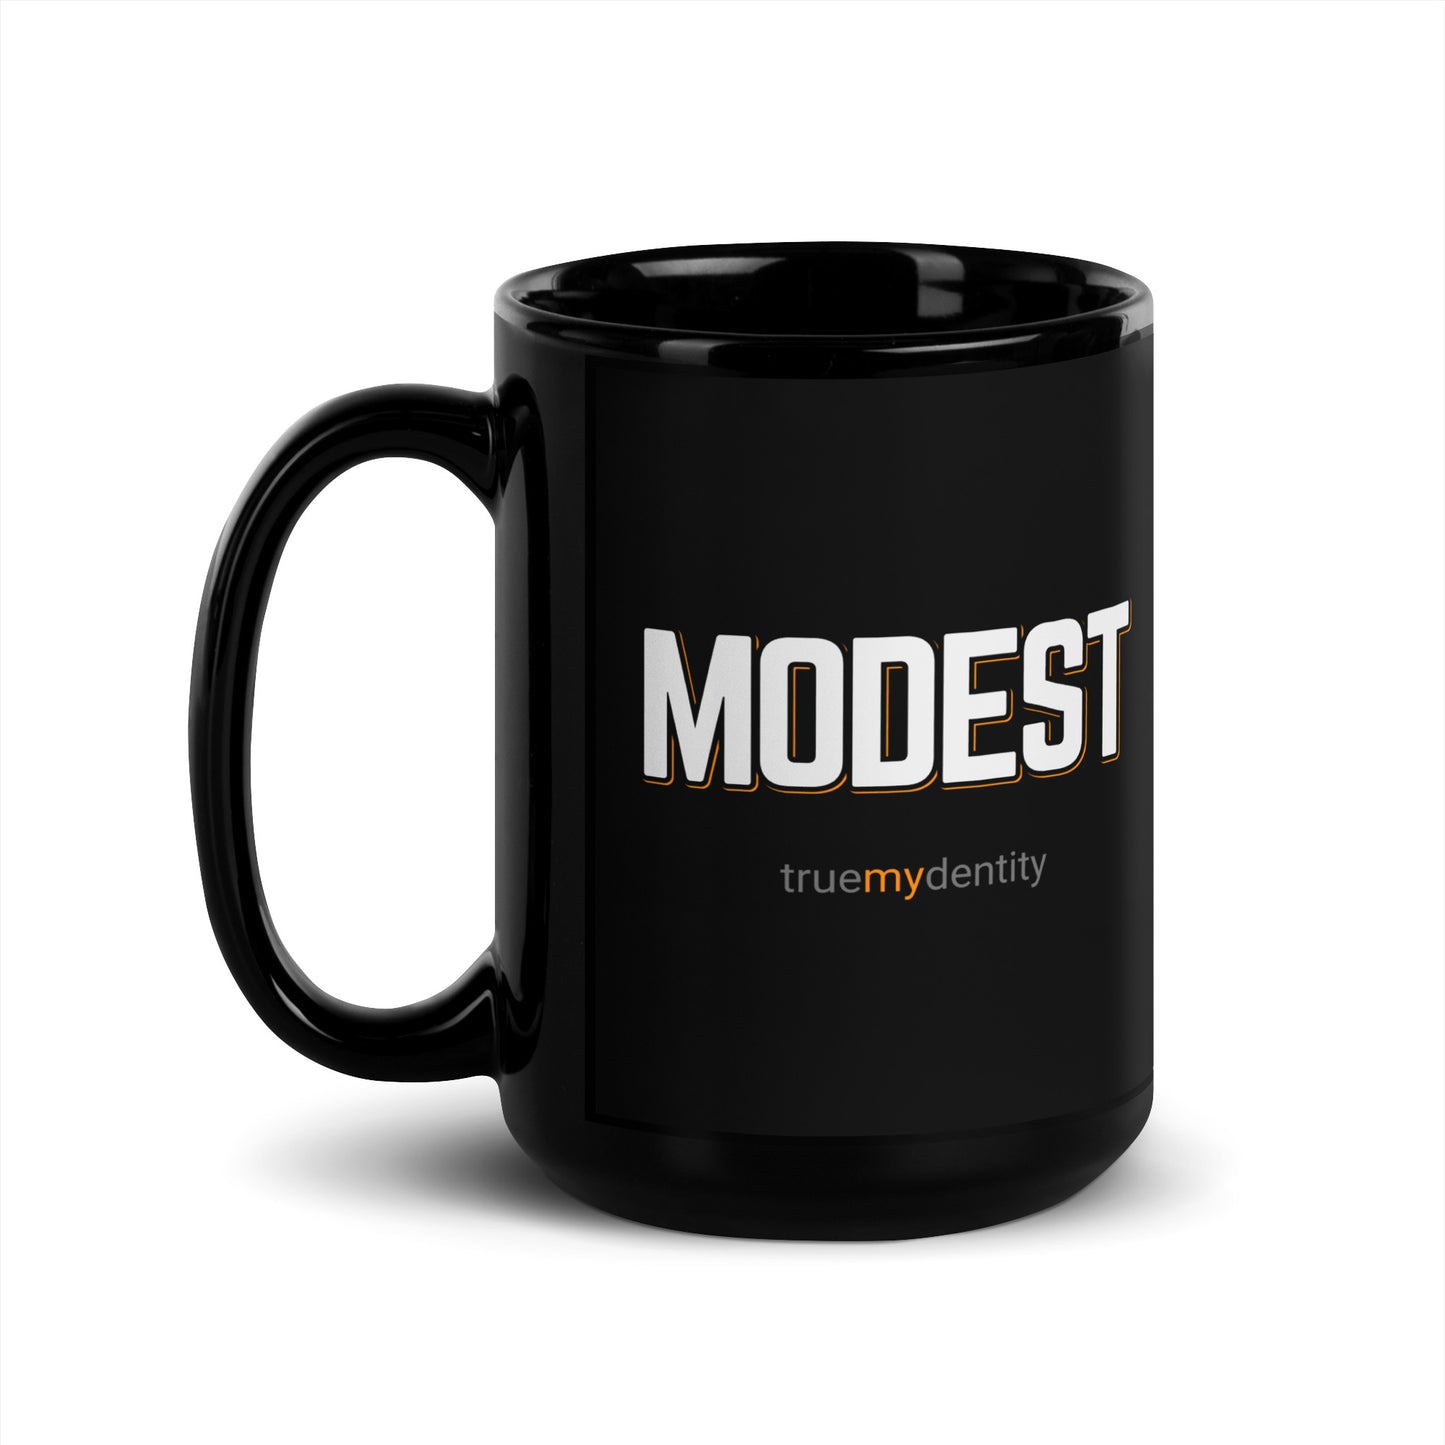 MODEST Black Coffee Mug Bold 11 oz or 15 oz